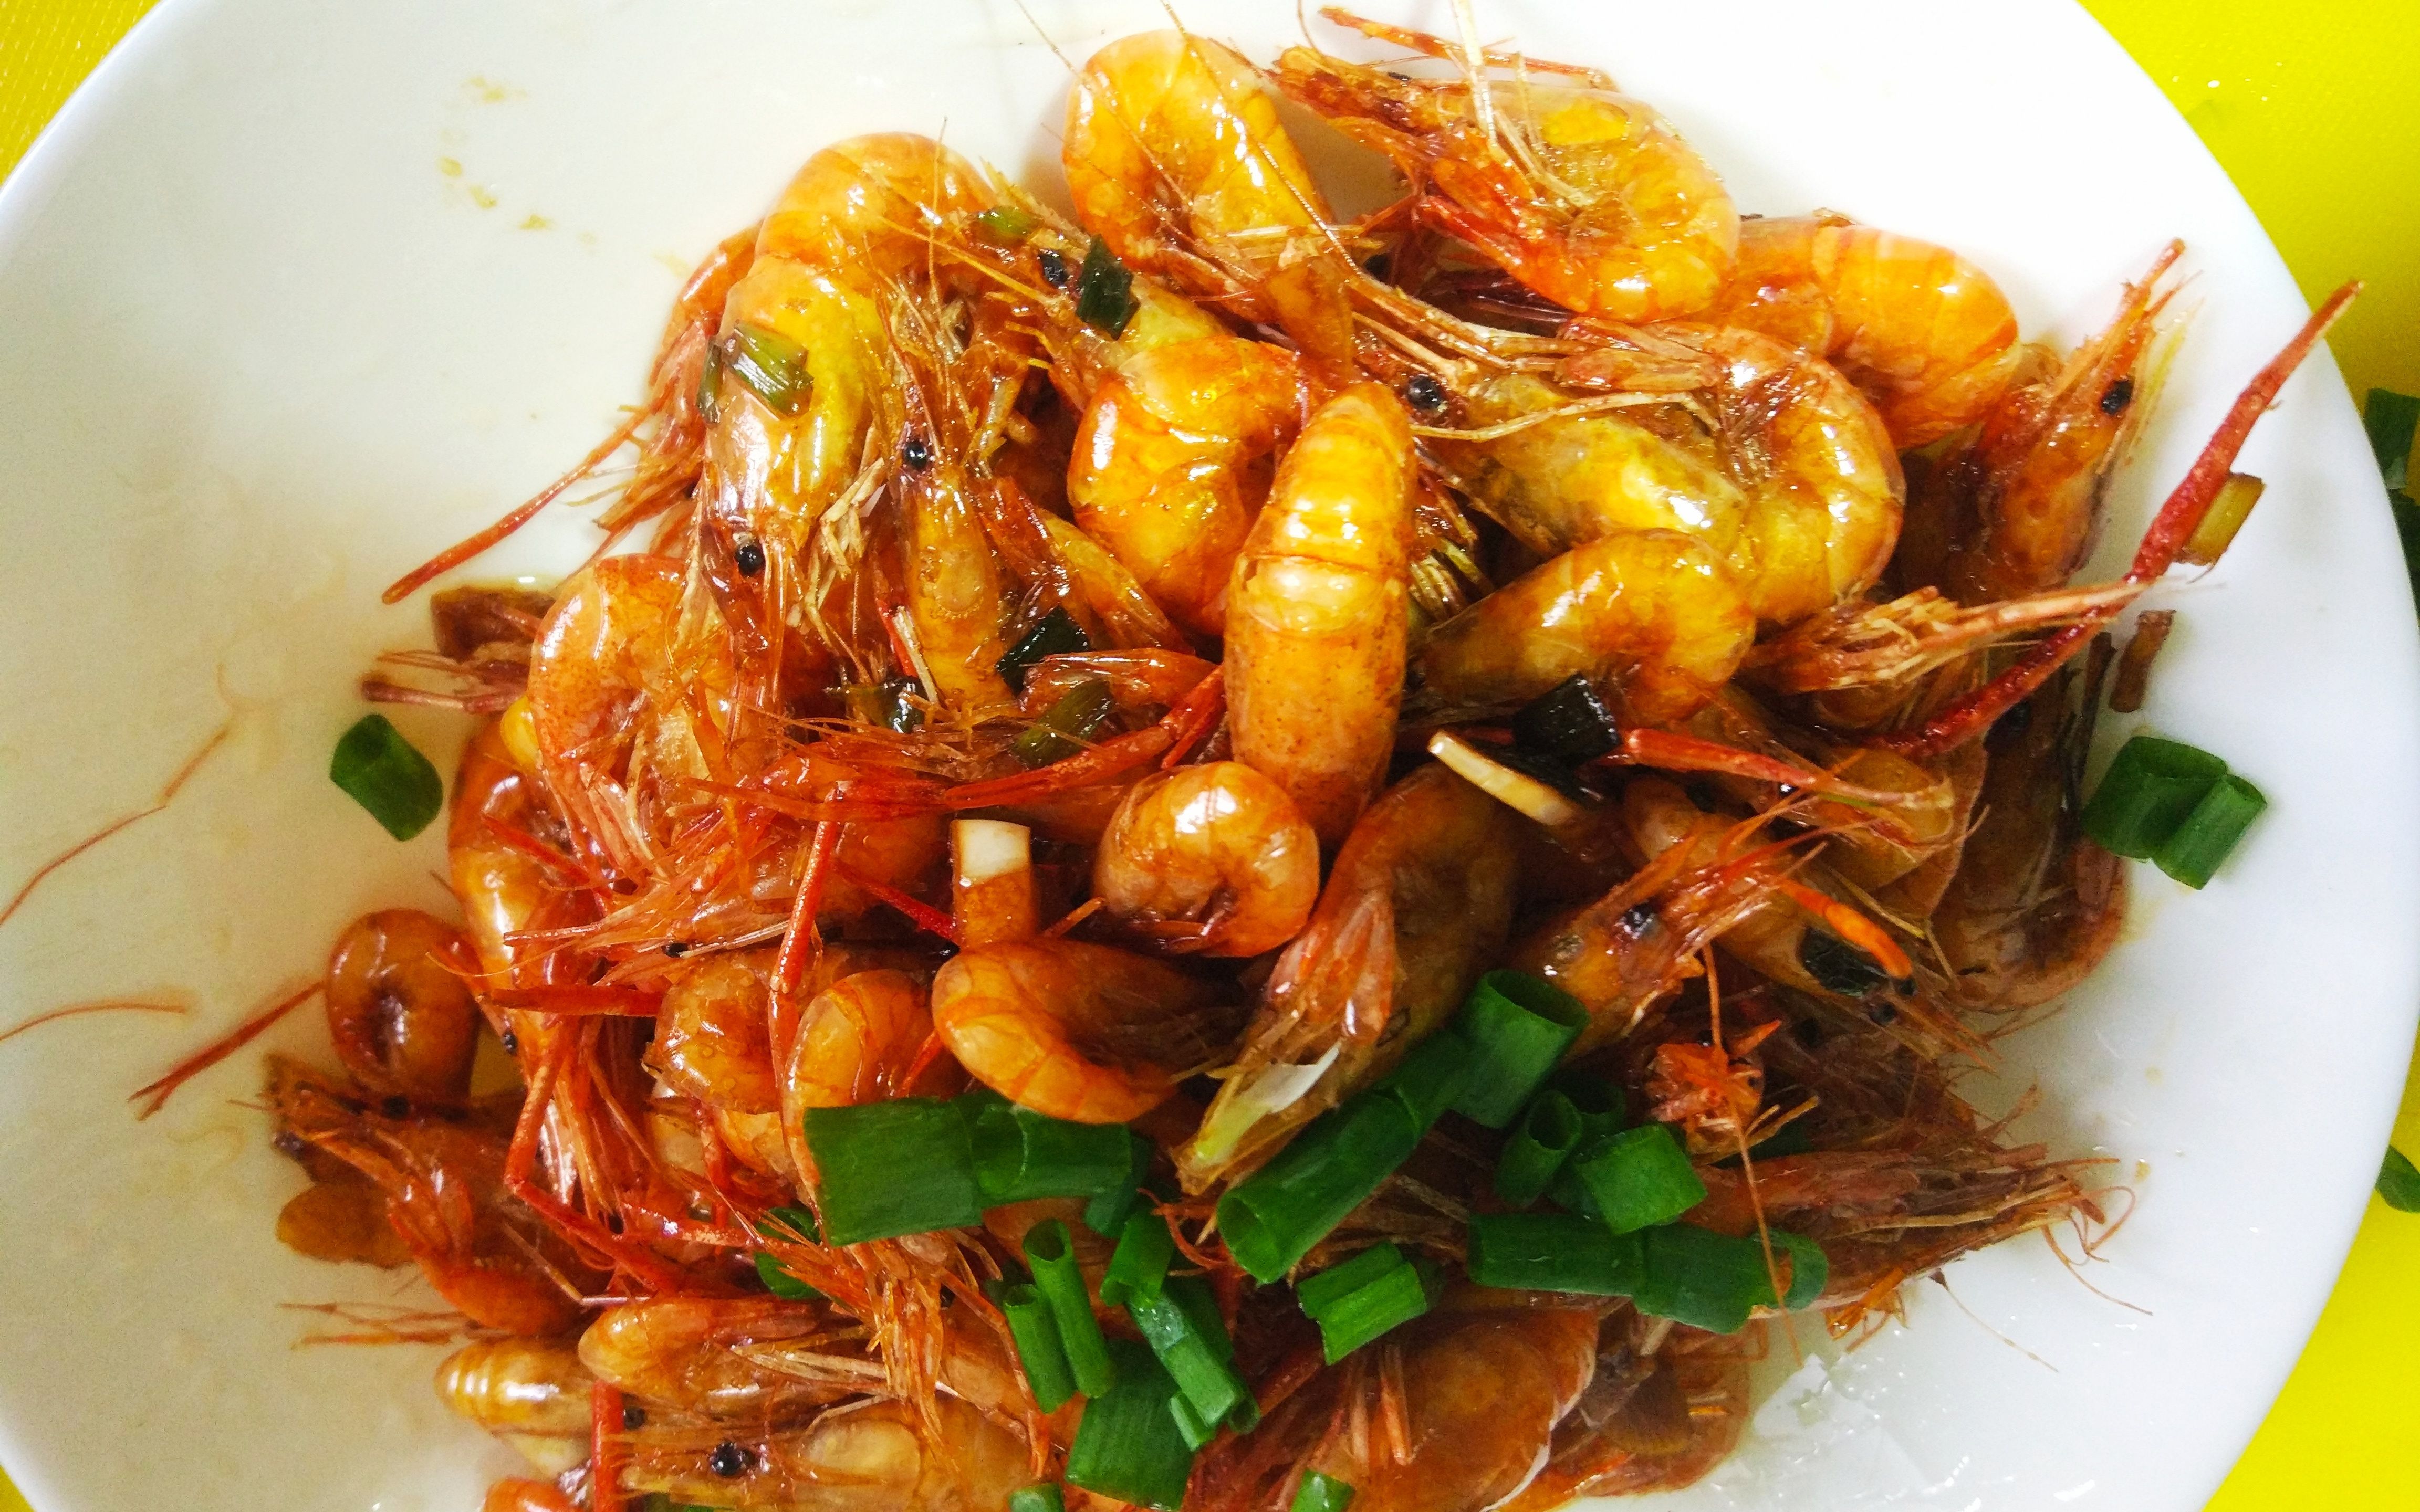 油爆河虾,经典老菜,虾肉熟而不老虾壳脆而不焦